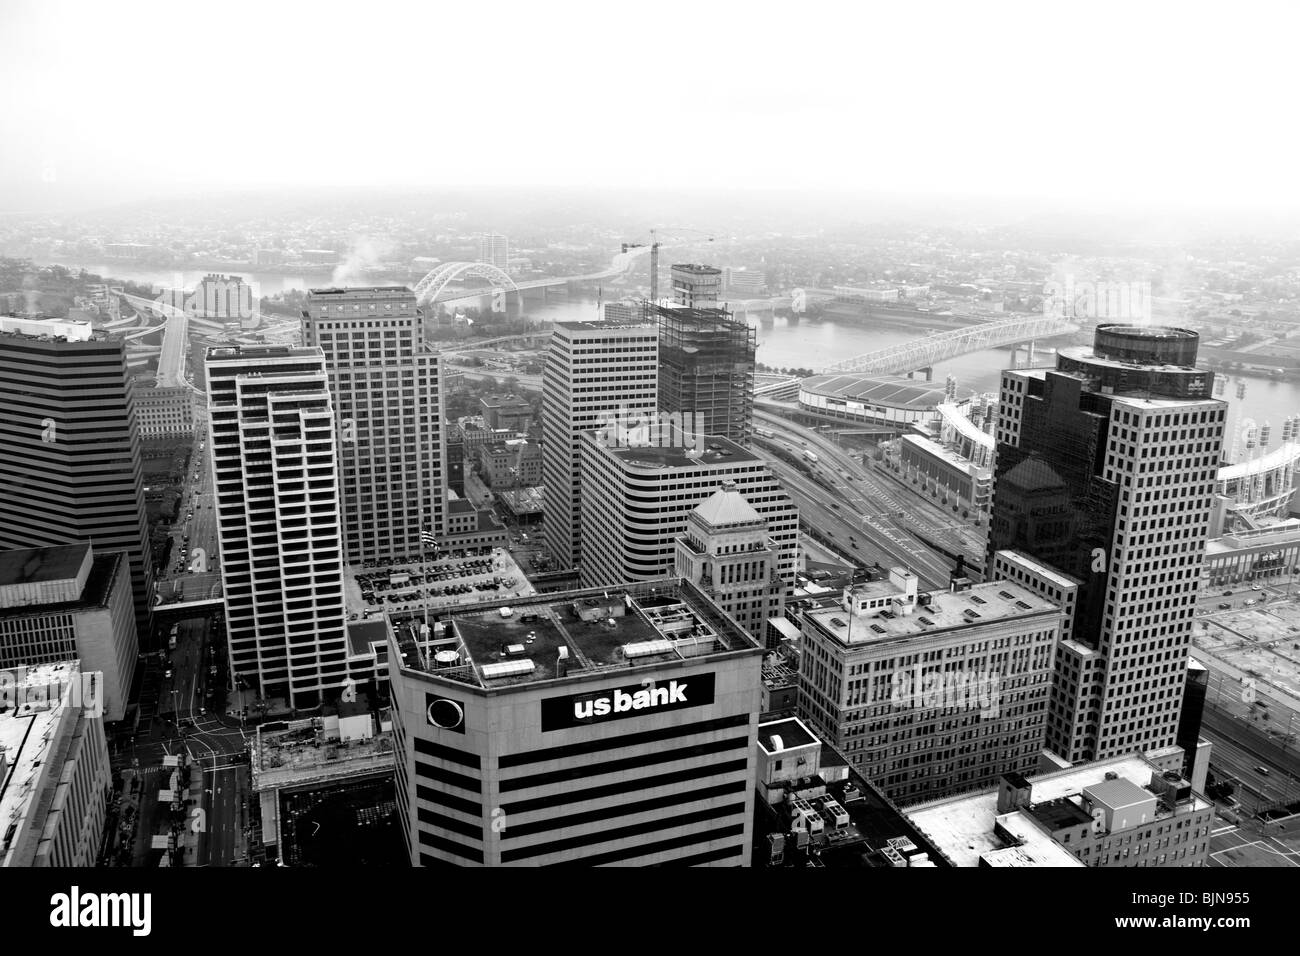 Centro cittadino di Cincinnati come vista dalla torre principale in città. Ohio, Stati Uniti d'America Foto Stock